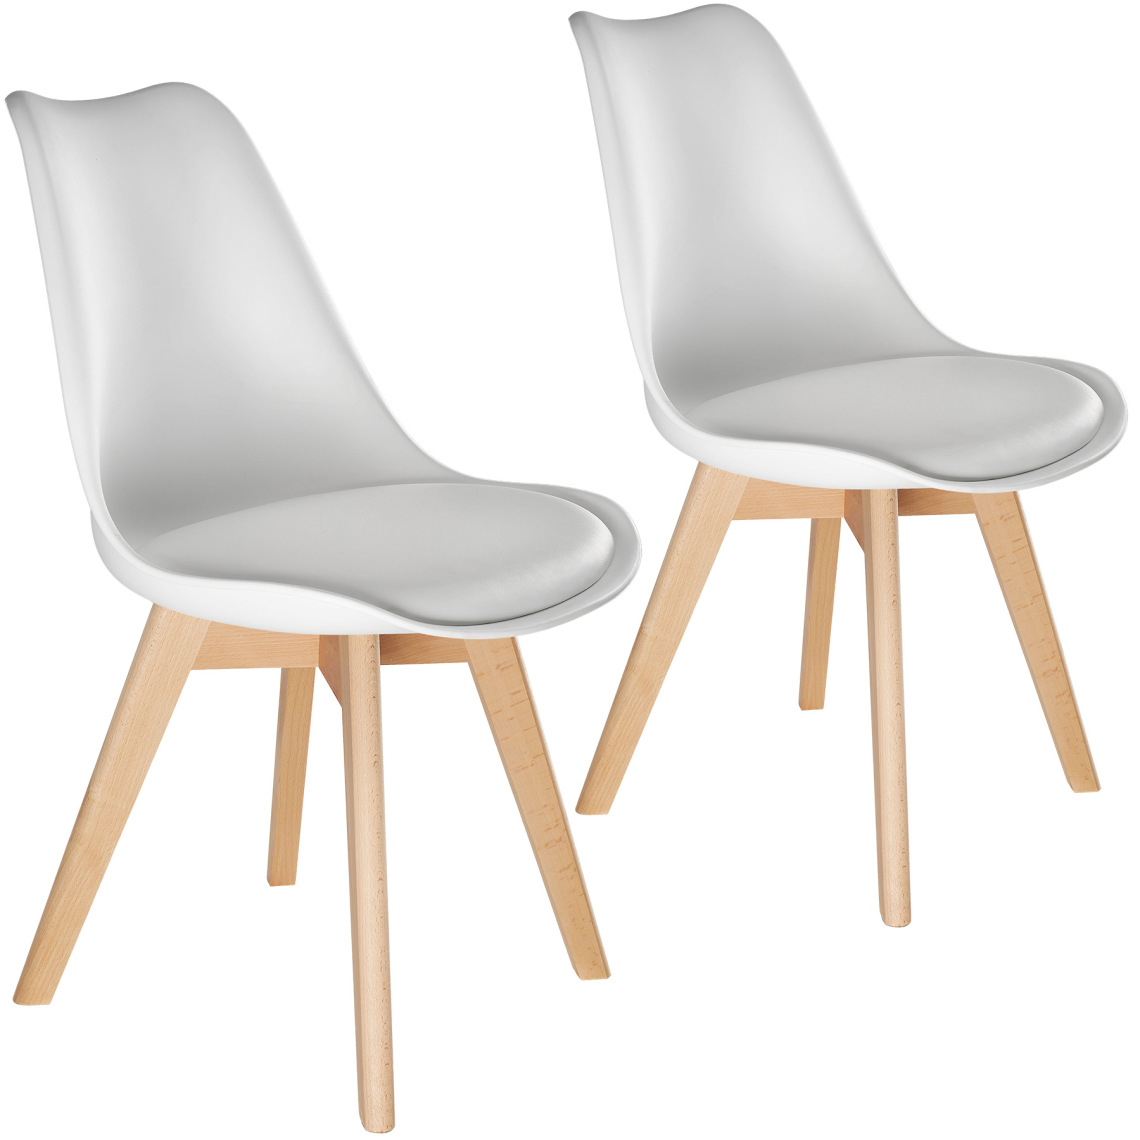 Tectake - 2 Chaises de Salle à Manger FRÉDÉRIQUE Style Scandinave Pieds en Bois Massif Design Moderne - blanc - Chaises